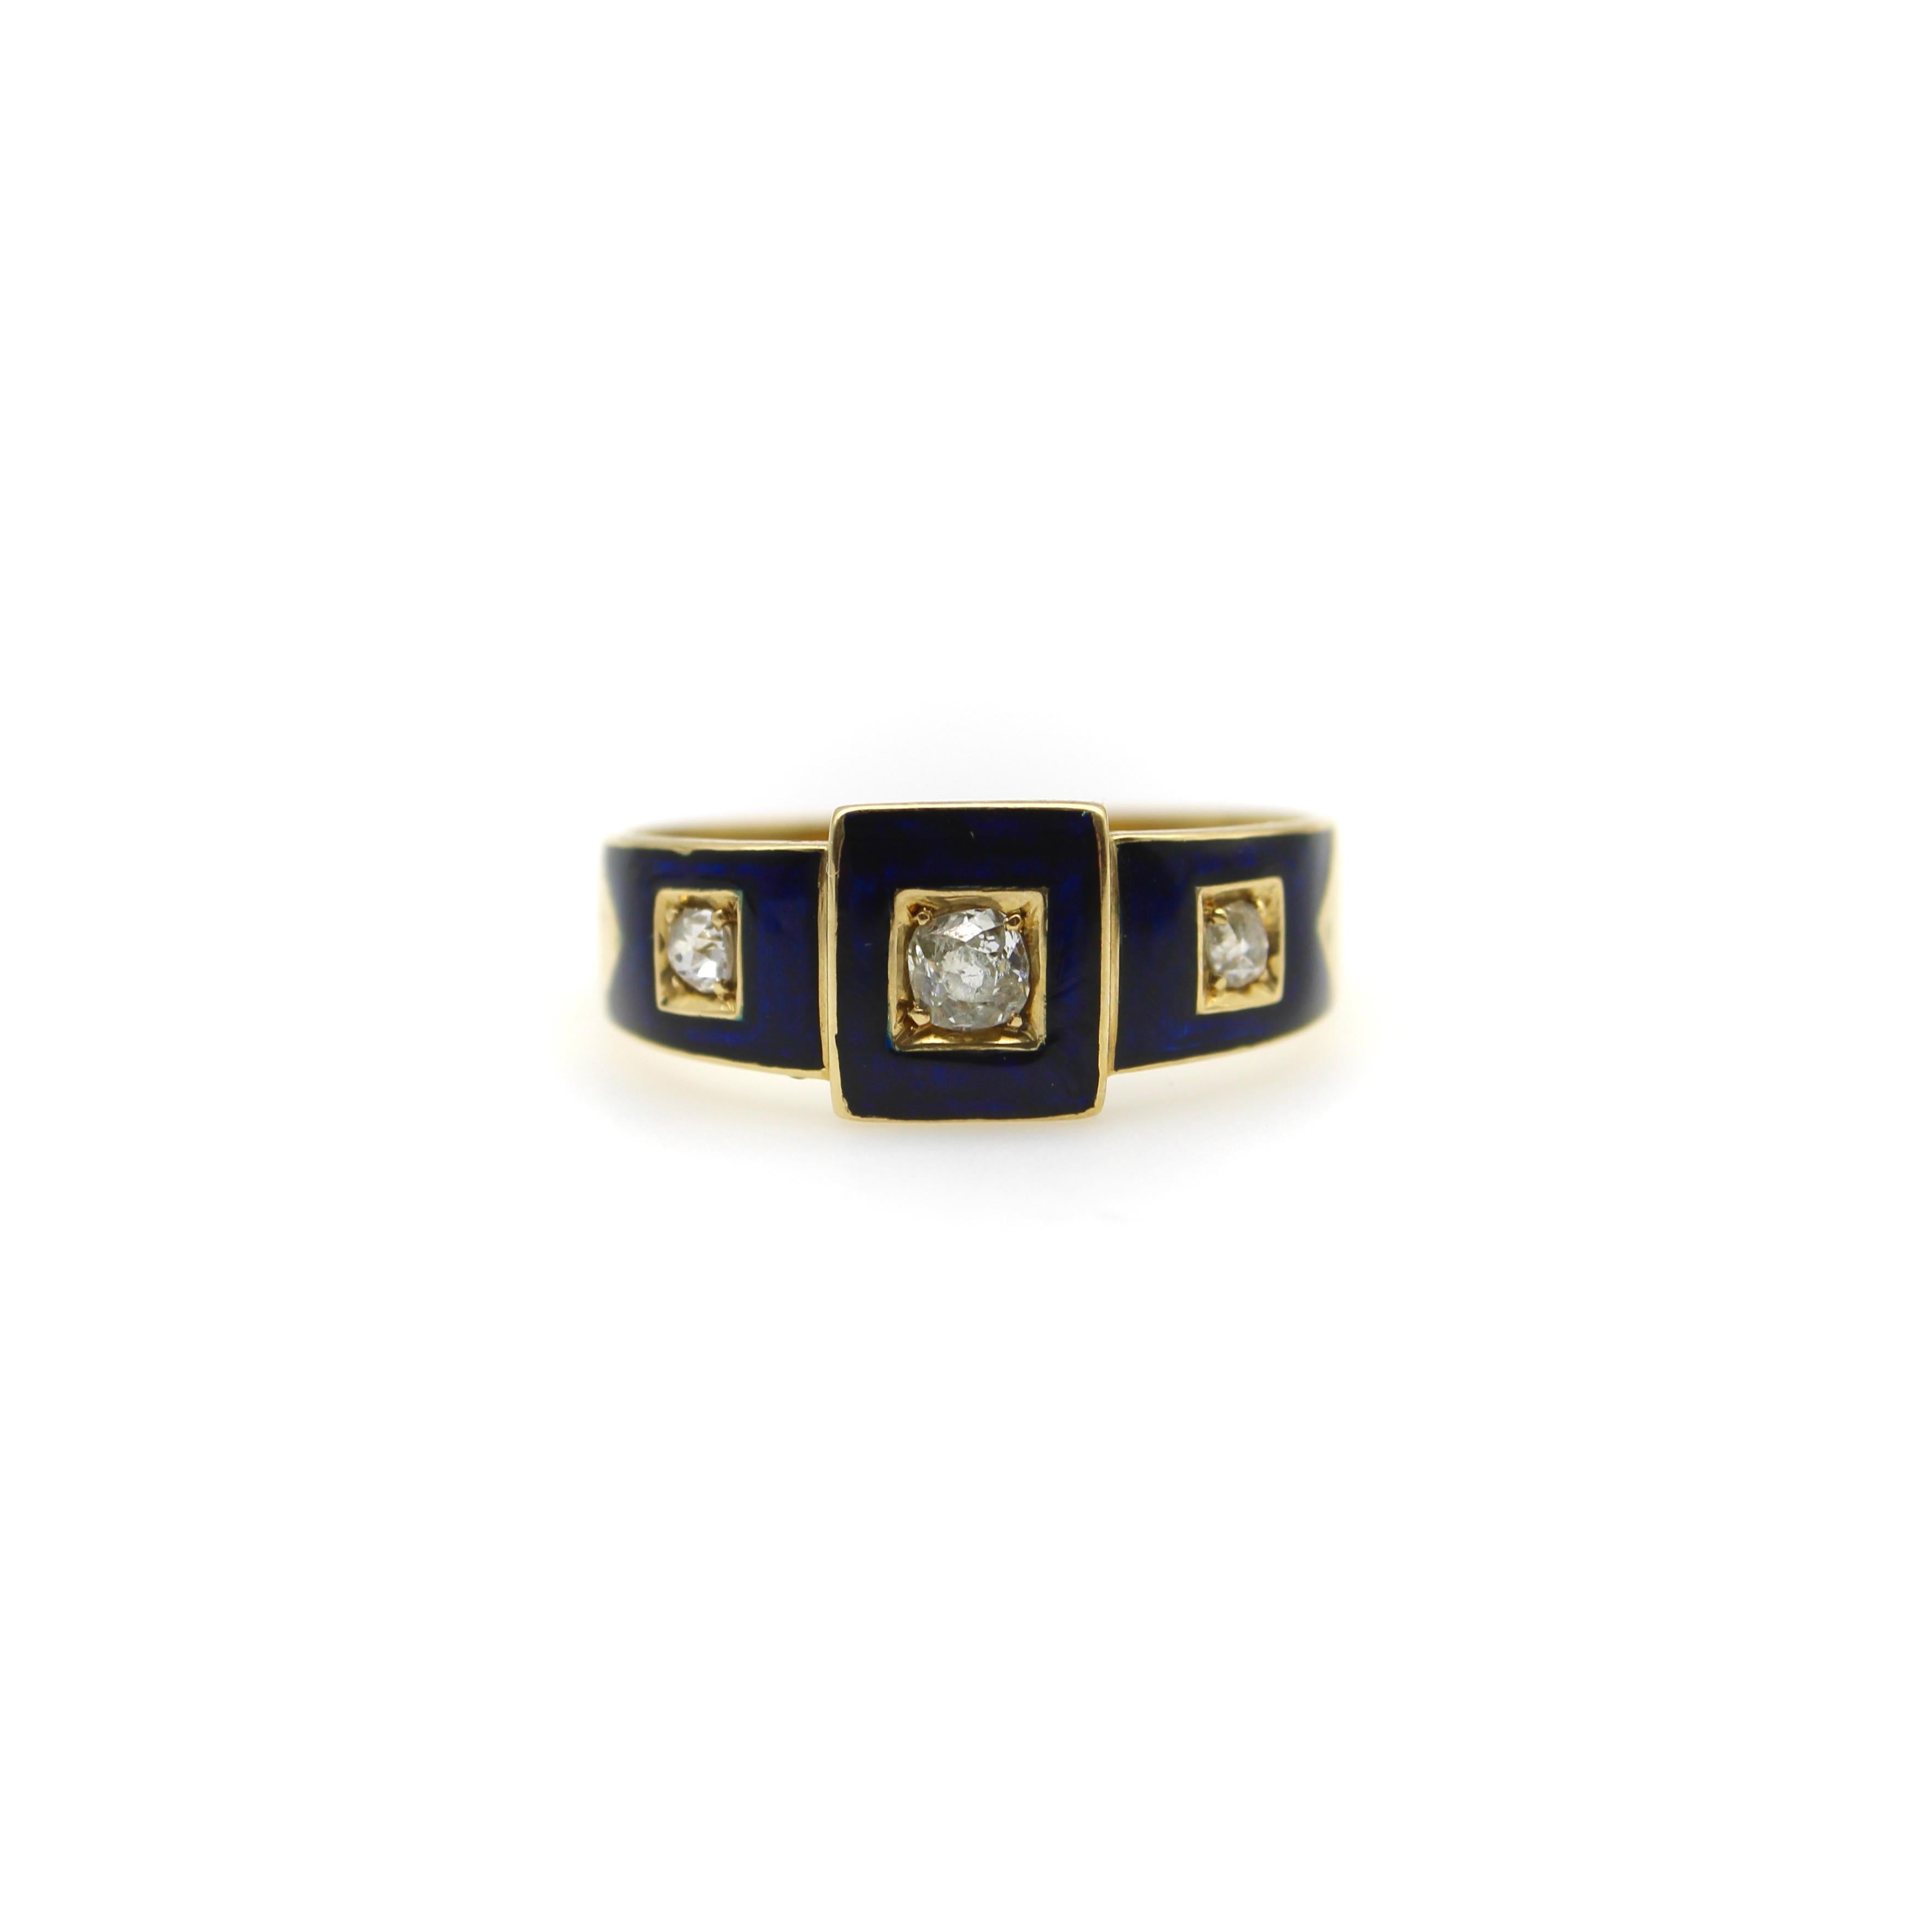 Dieser frühviktorianische Ring aus 18-karätigem Gold zeigt drei Diamanten im Old Mind Cut, die von quadratischen blauen Emaille-Details umgeben sind. Die Diamanten befinden sich in einer quadratischen, ausgehöhlten Fassung aus 18-karätigem Gold, die